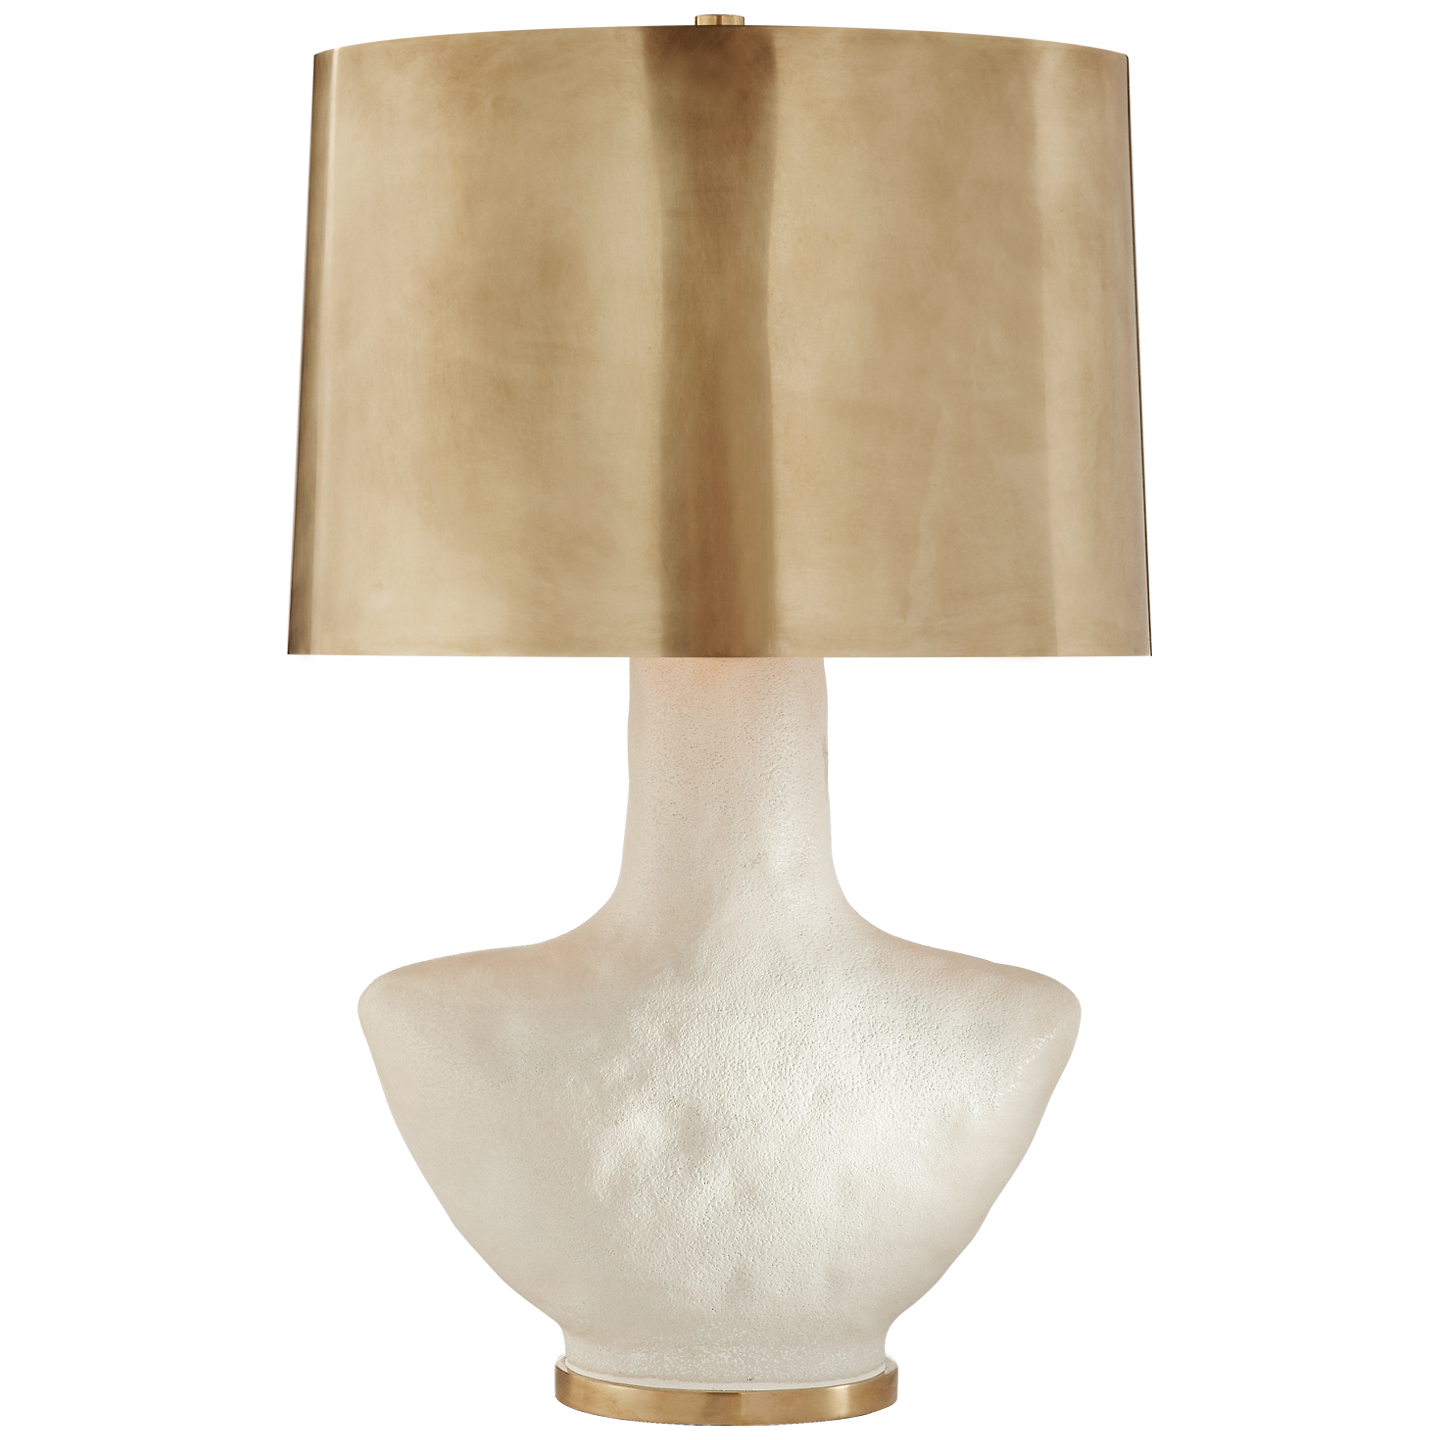 Armato Tischlampe, kleines Modell – weiße Keramik und brüniertes Messing 